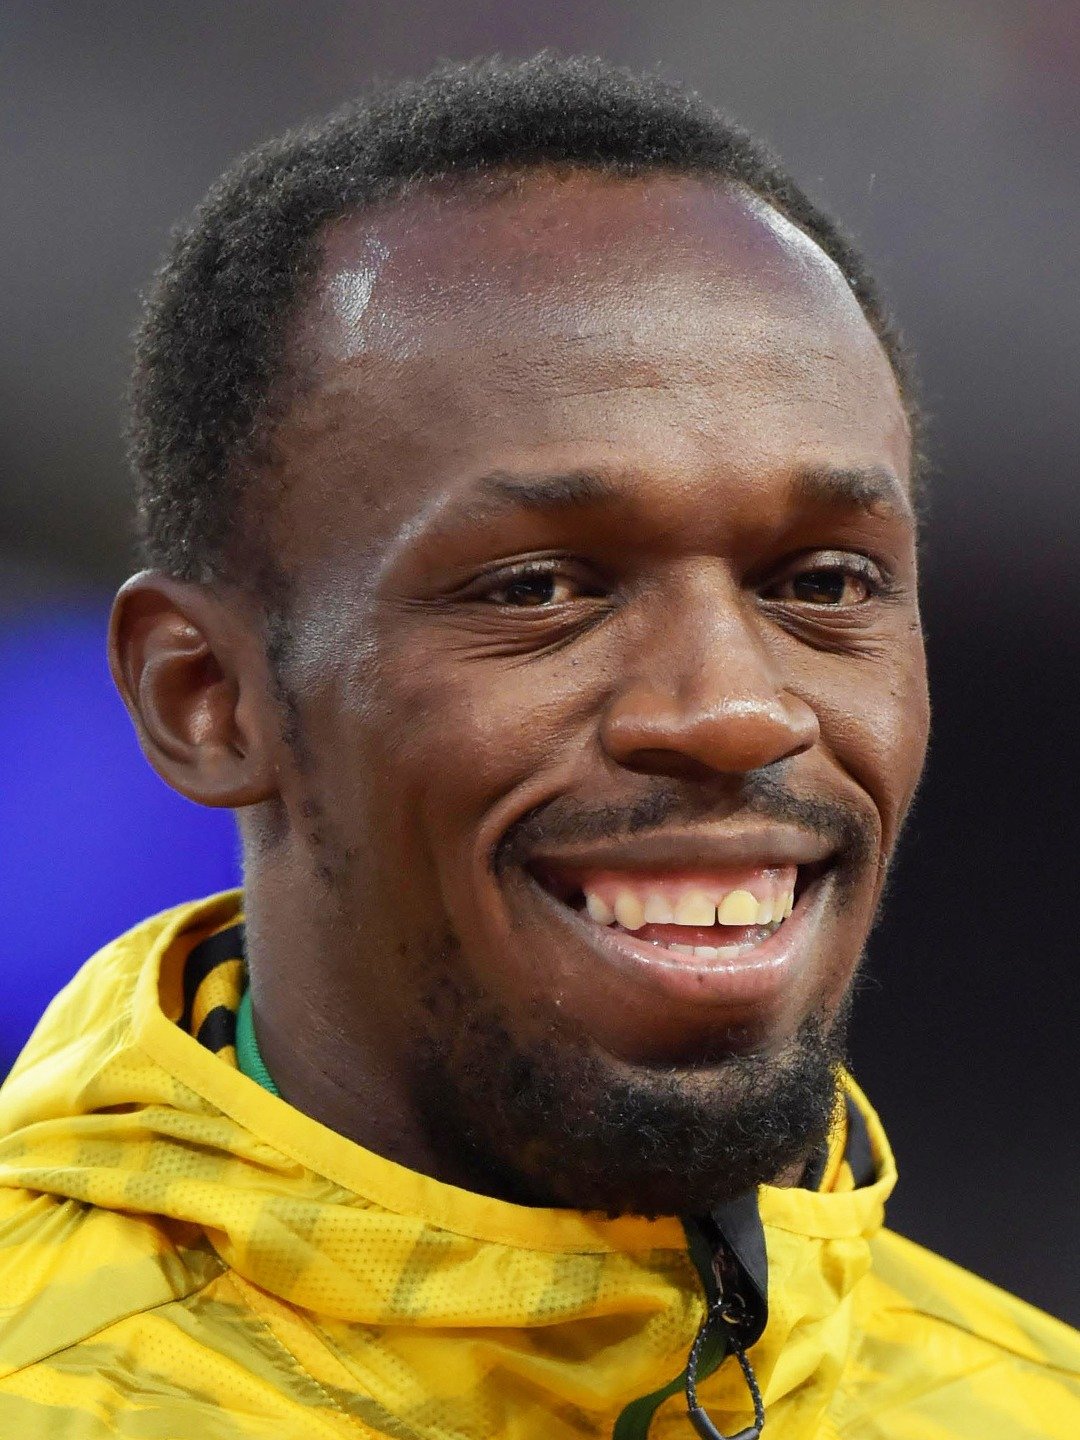 How tall is Usain Bolt?